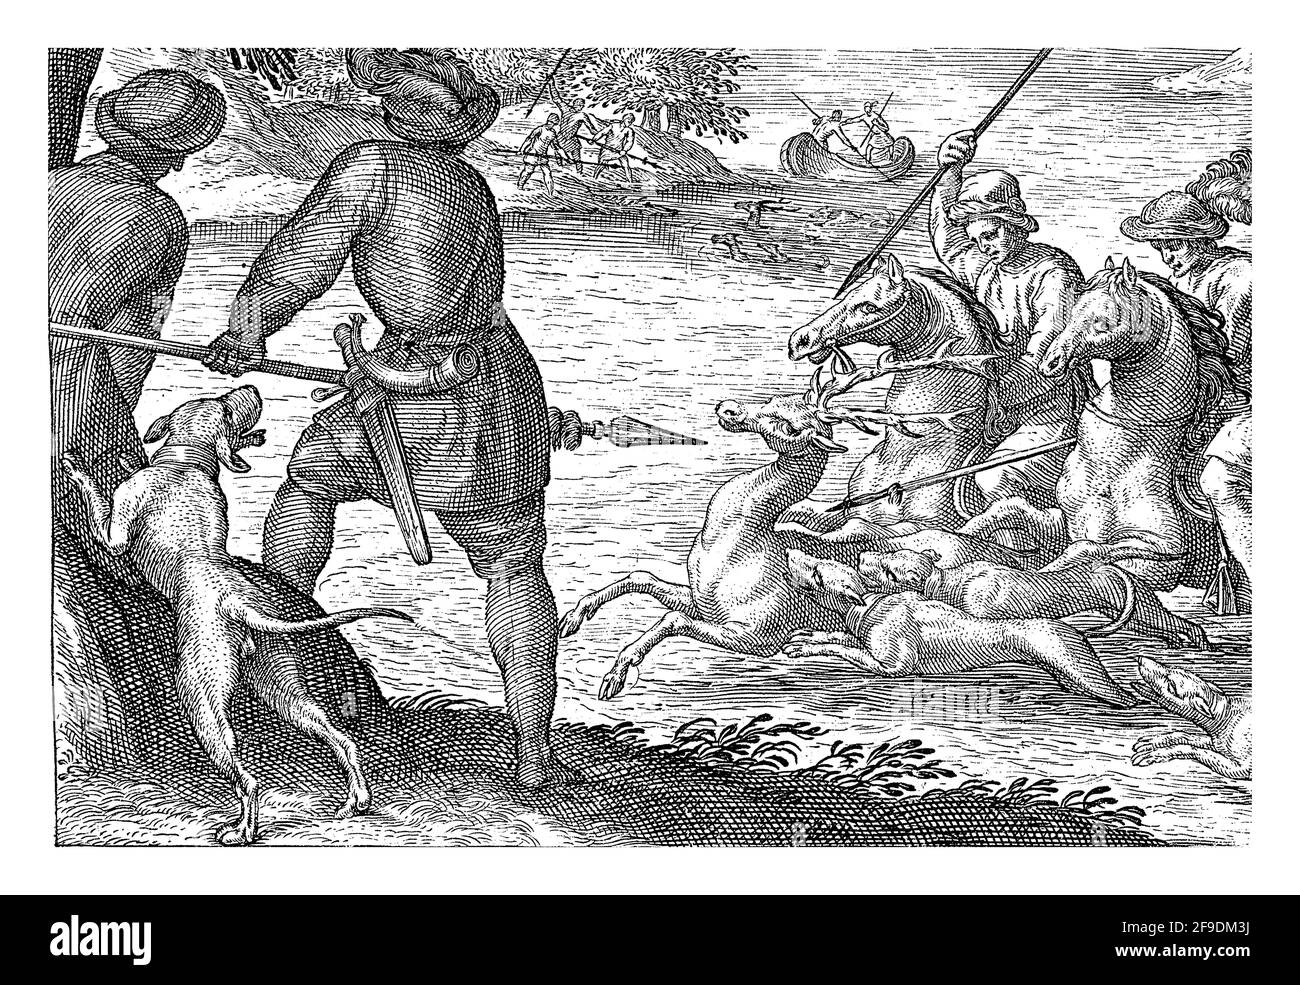 Paesaggio con due cavalieri e tre cani in un fiume. I cavalieri puntano le loro lance verso un cervo. Sulla riva sinistra, due cacciatori e un cane, visto da dietro Foto Stock